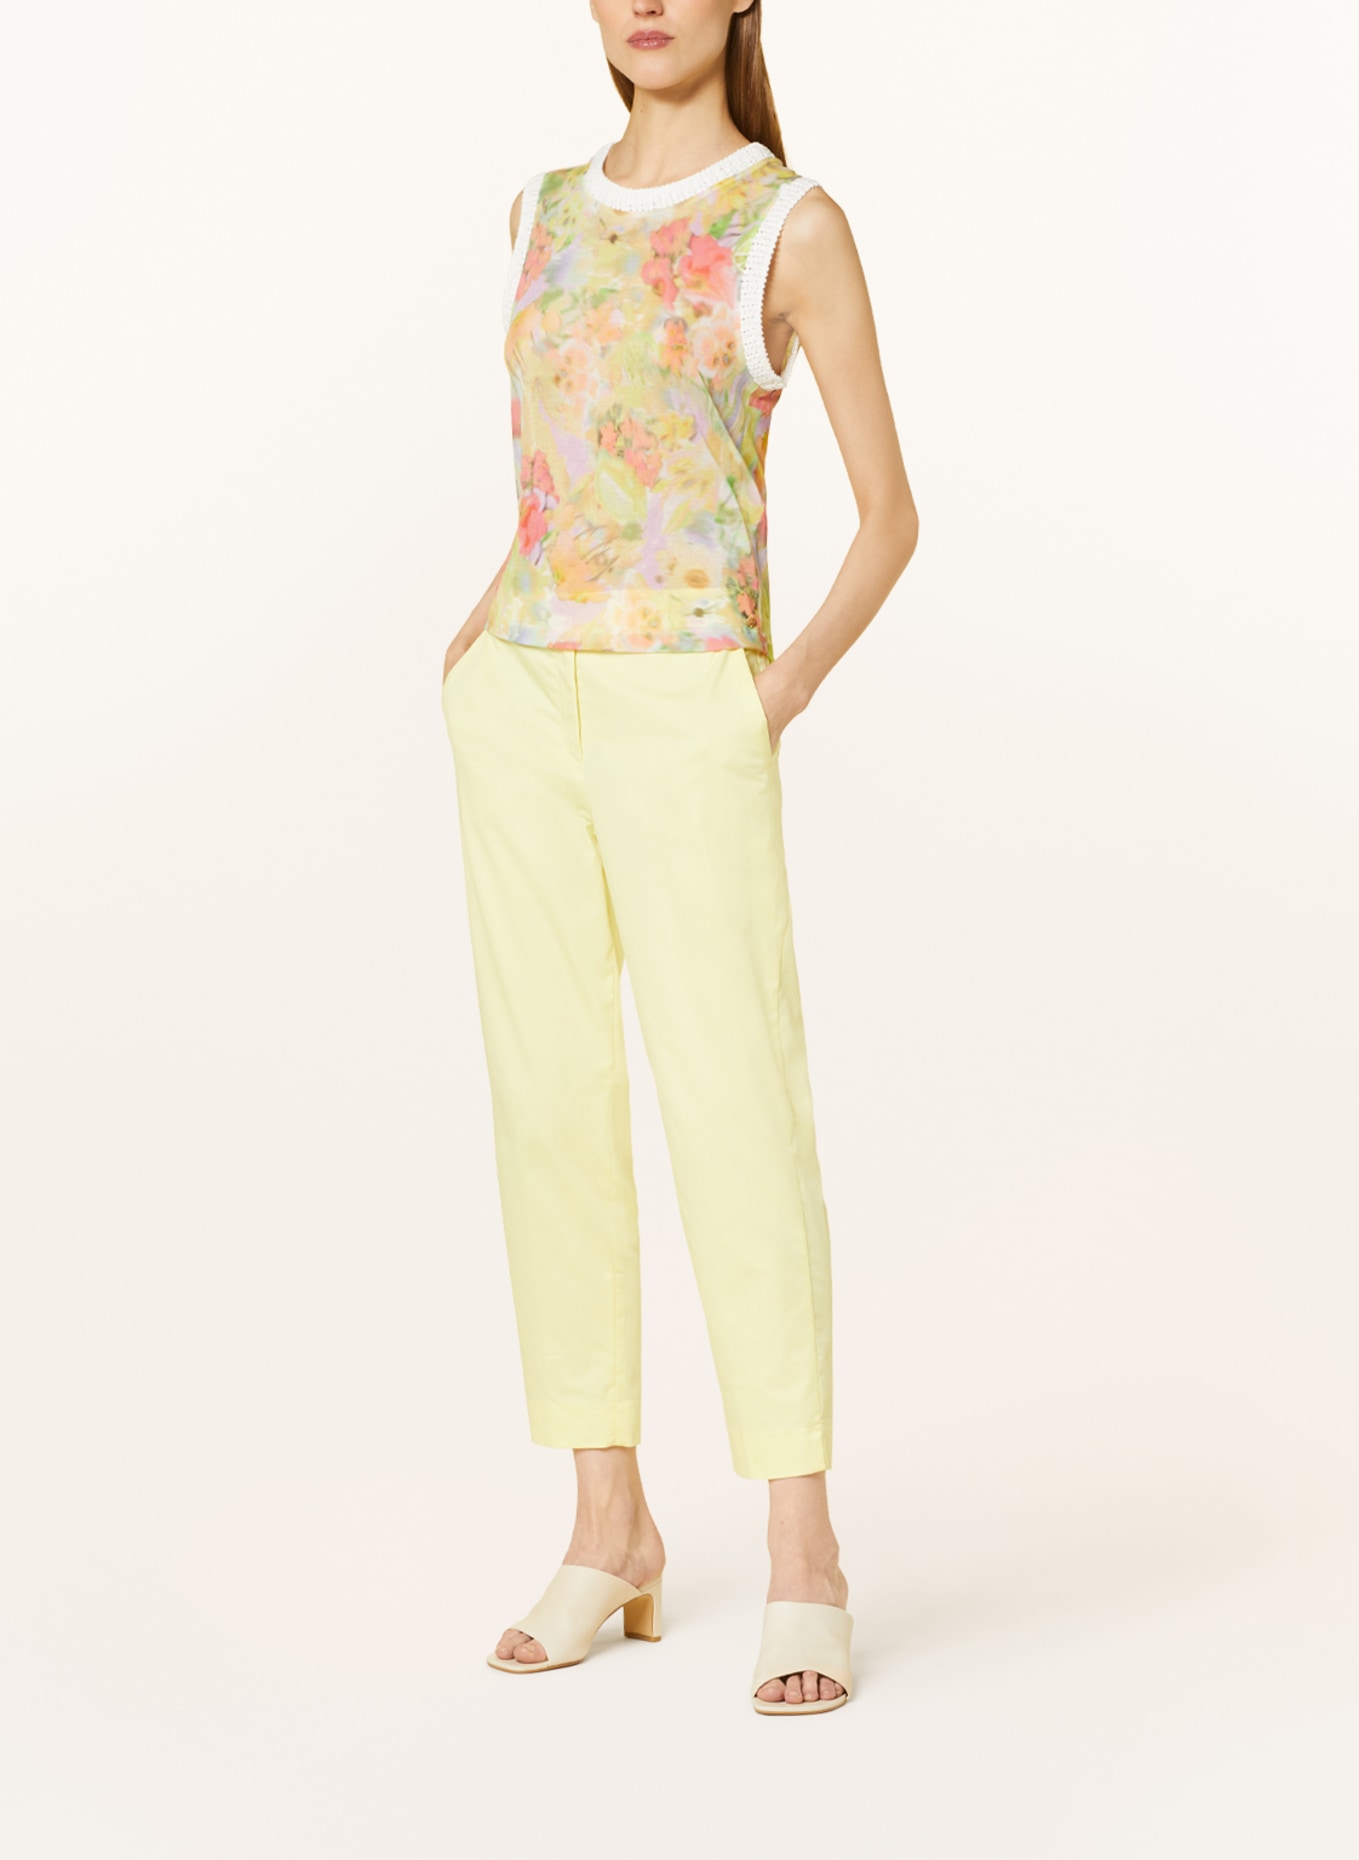 MARC CAIN Knit top, Color: 420 pale lemon (Image 2)